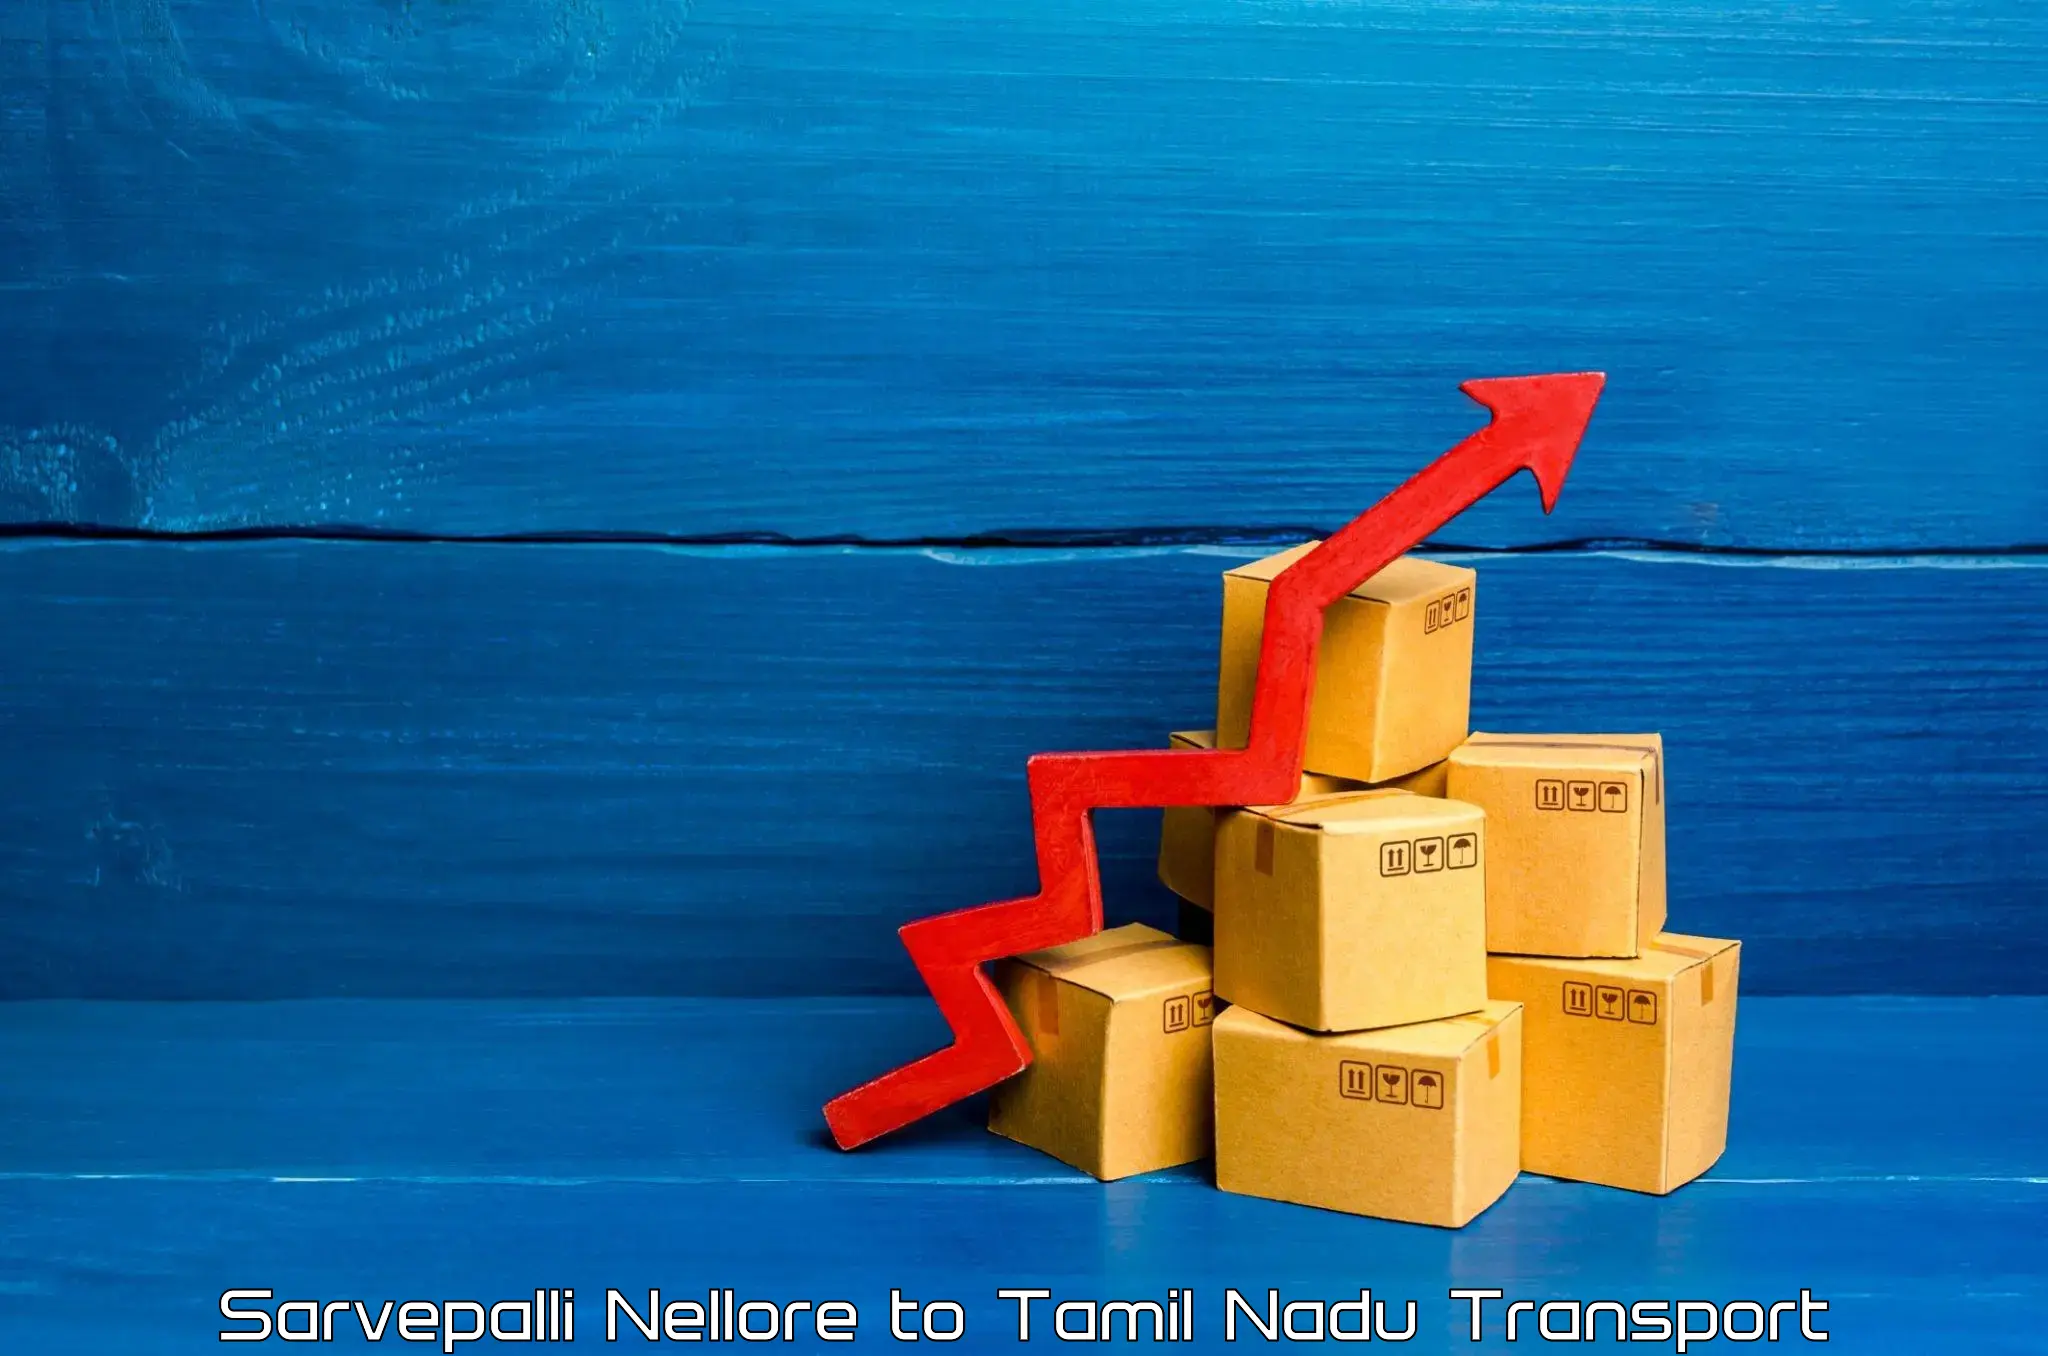 Shipping partner Sarvepalli Nellore to Tamil Nadu